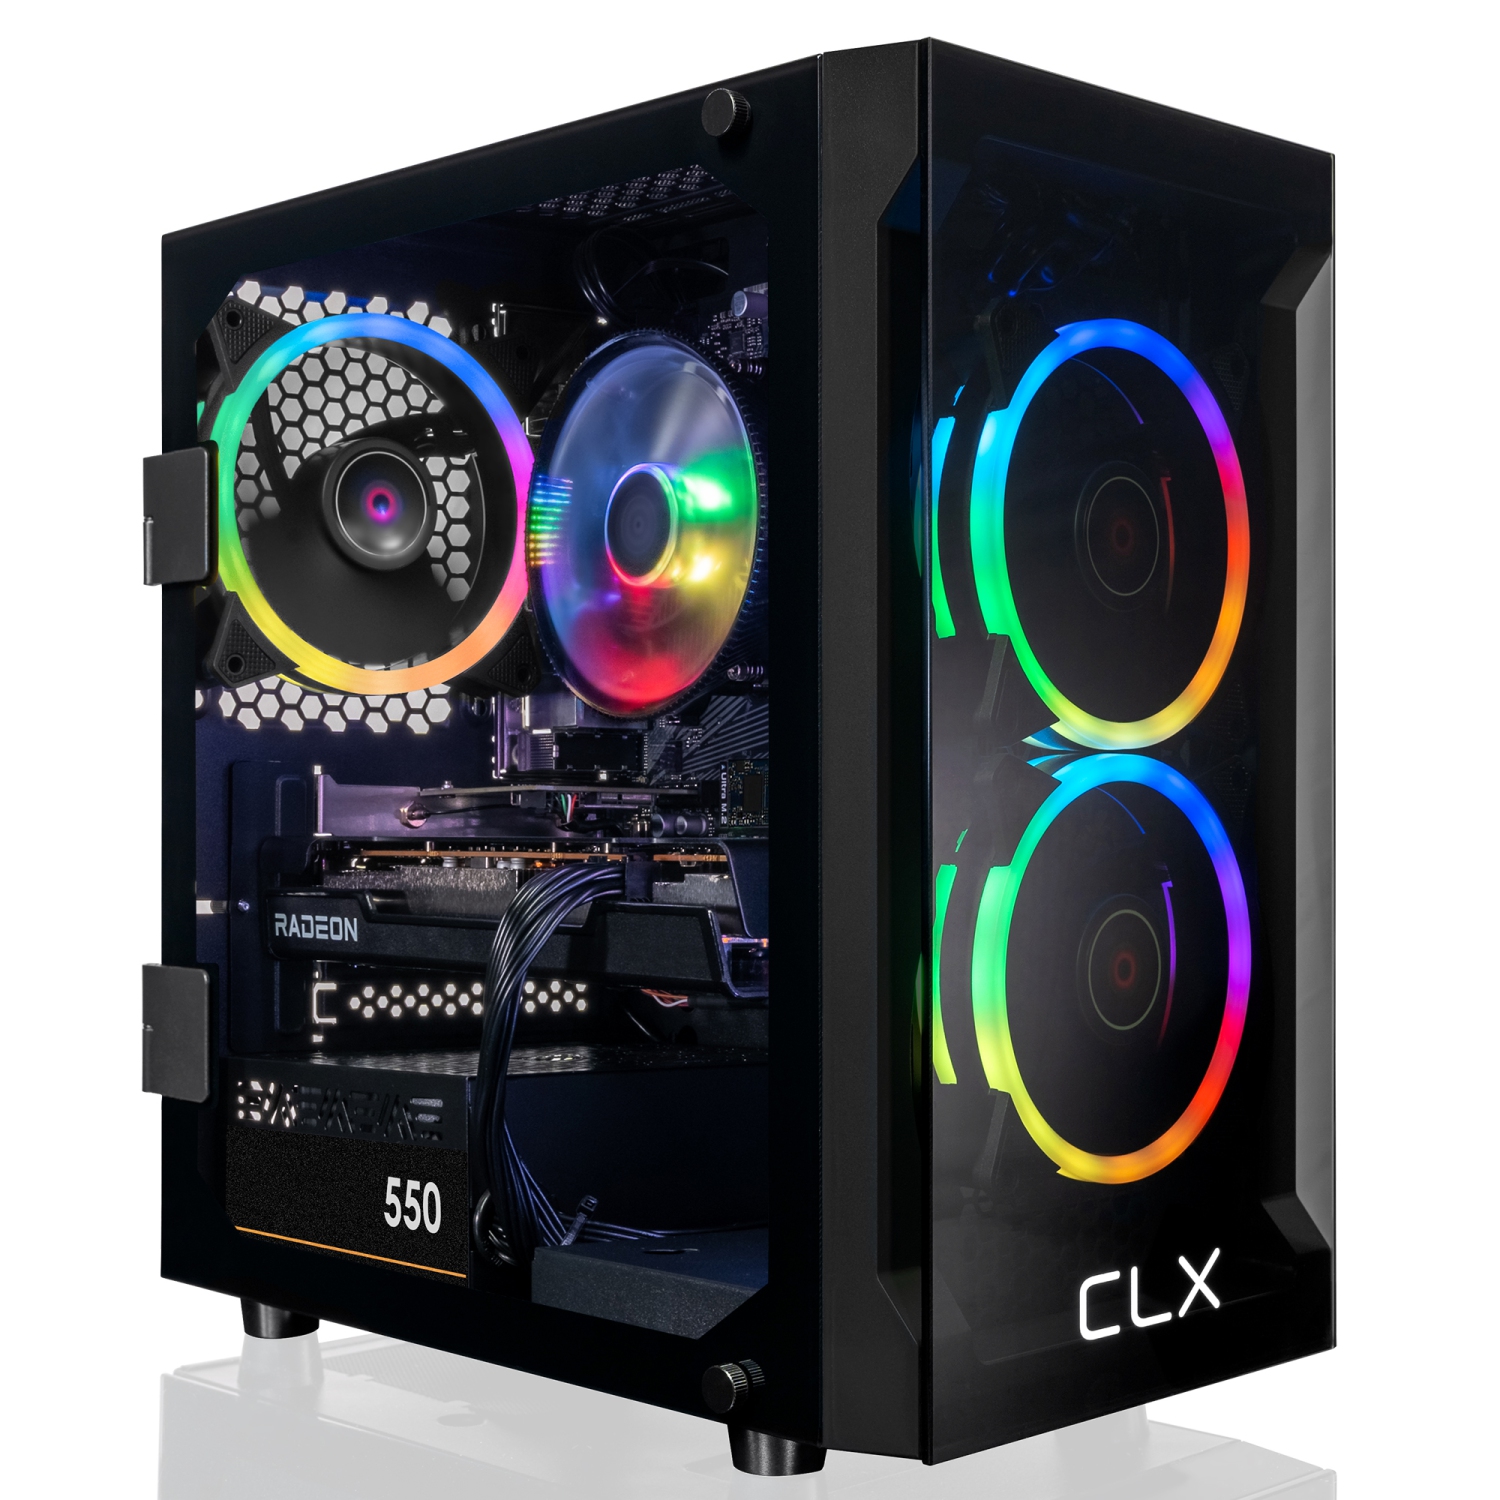 CLX SET Gaming Desktop - AMD Ryzen 7 5700X 3.4GHz 8-Core, 16GB DDR4, Radeon RX 6600 XT 8GB GDDR6 Graphics, 500GB SSD, 2TB HDD, WiFi, Windows 11 Home 64-bit